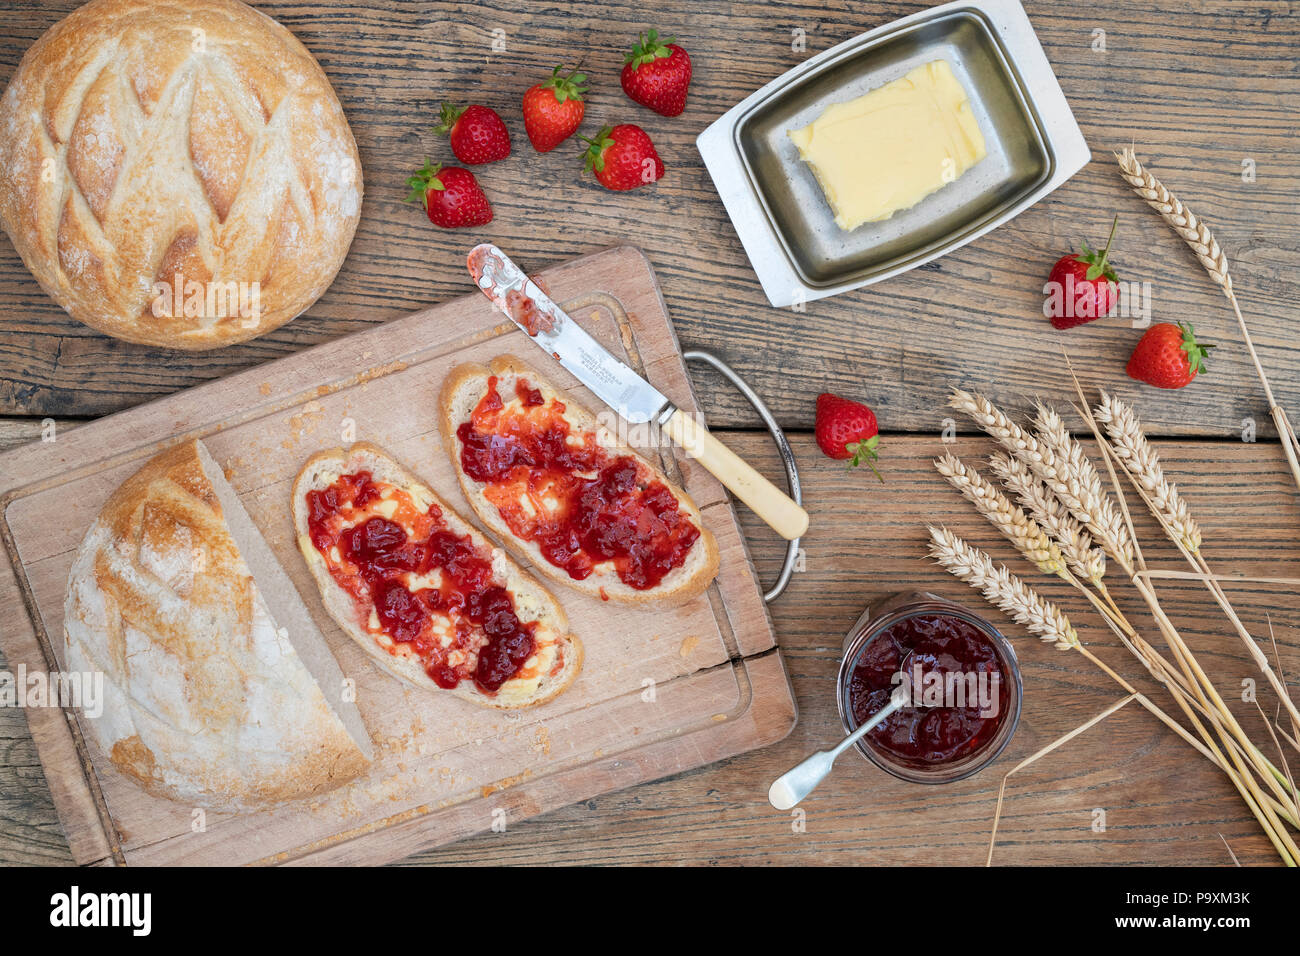 Erdbeermarmelade auf Brot mit Weizen und Erdbeeren auf einem Holz Hintergrund Stockfoto